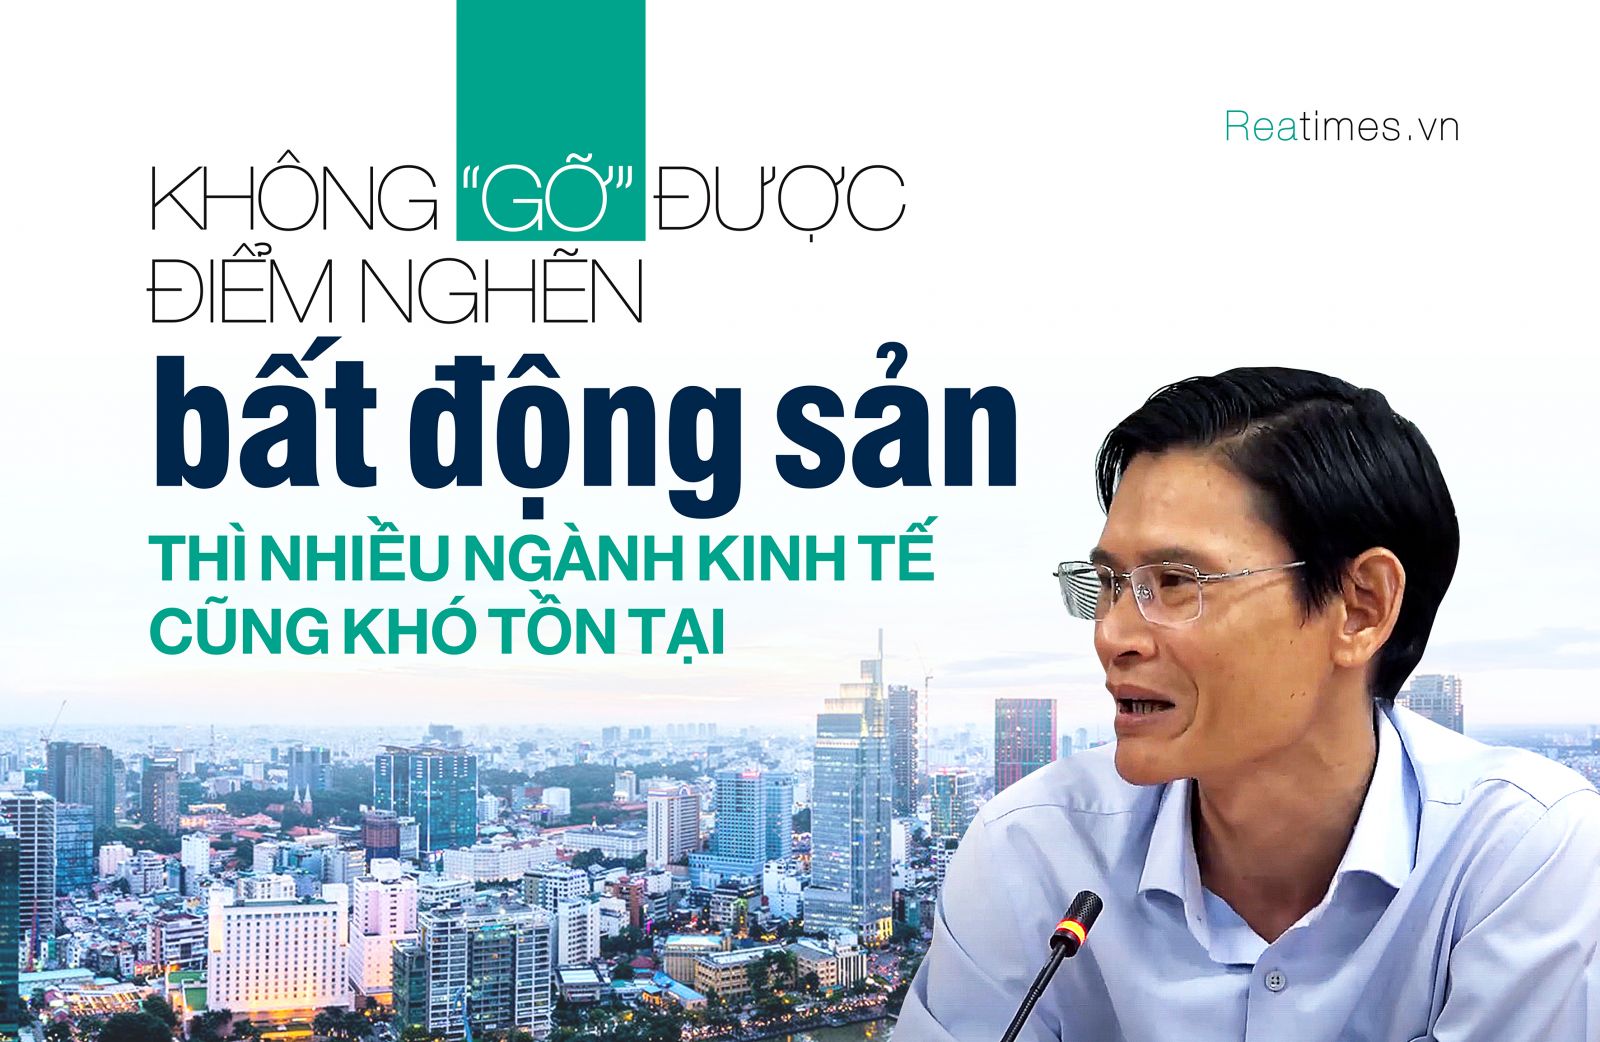 TS. Huỳnh Thanh Điền: “Để kích cầu nội địa thì chỉ có cách khôi phục thị trường bất động sản“